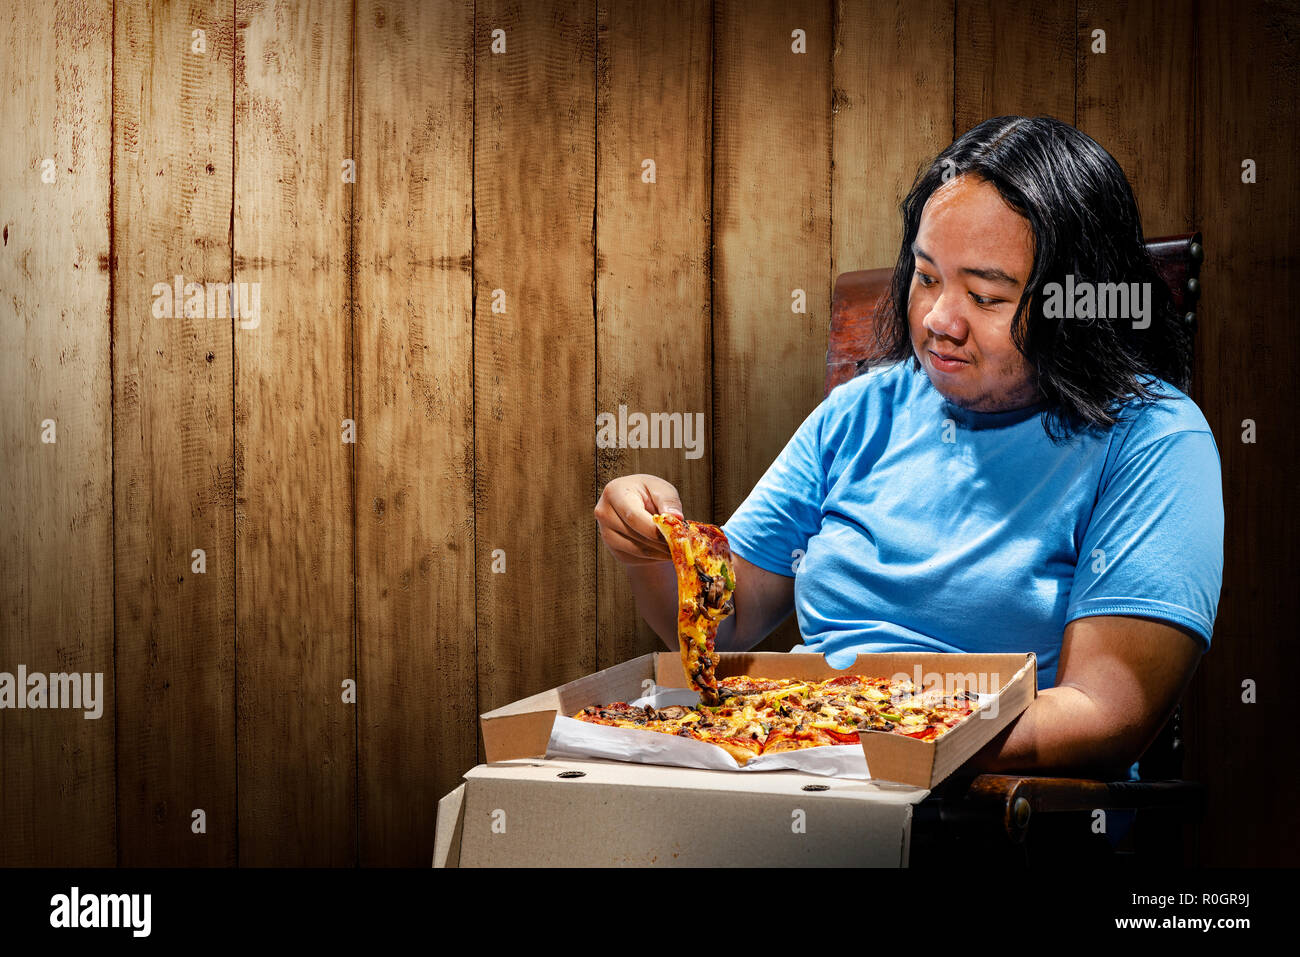 Jungen asiatischen Fat man essen Pizza auf einen Stuhl. Fat Man Diät Konzept Stockfoto